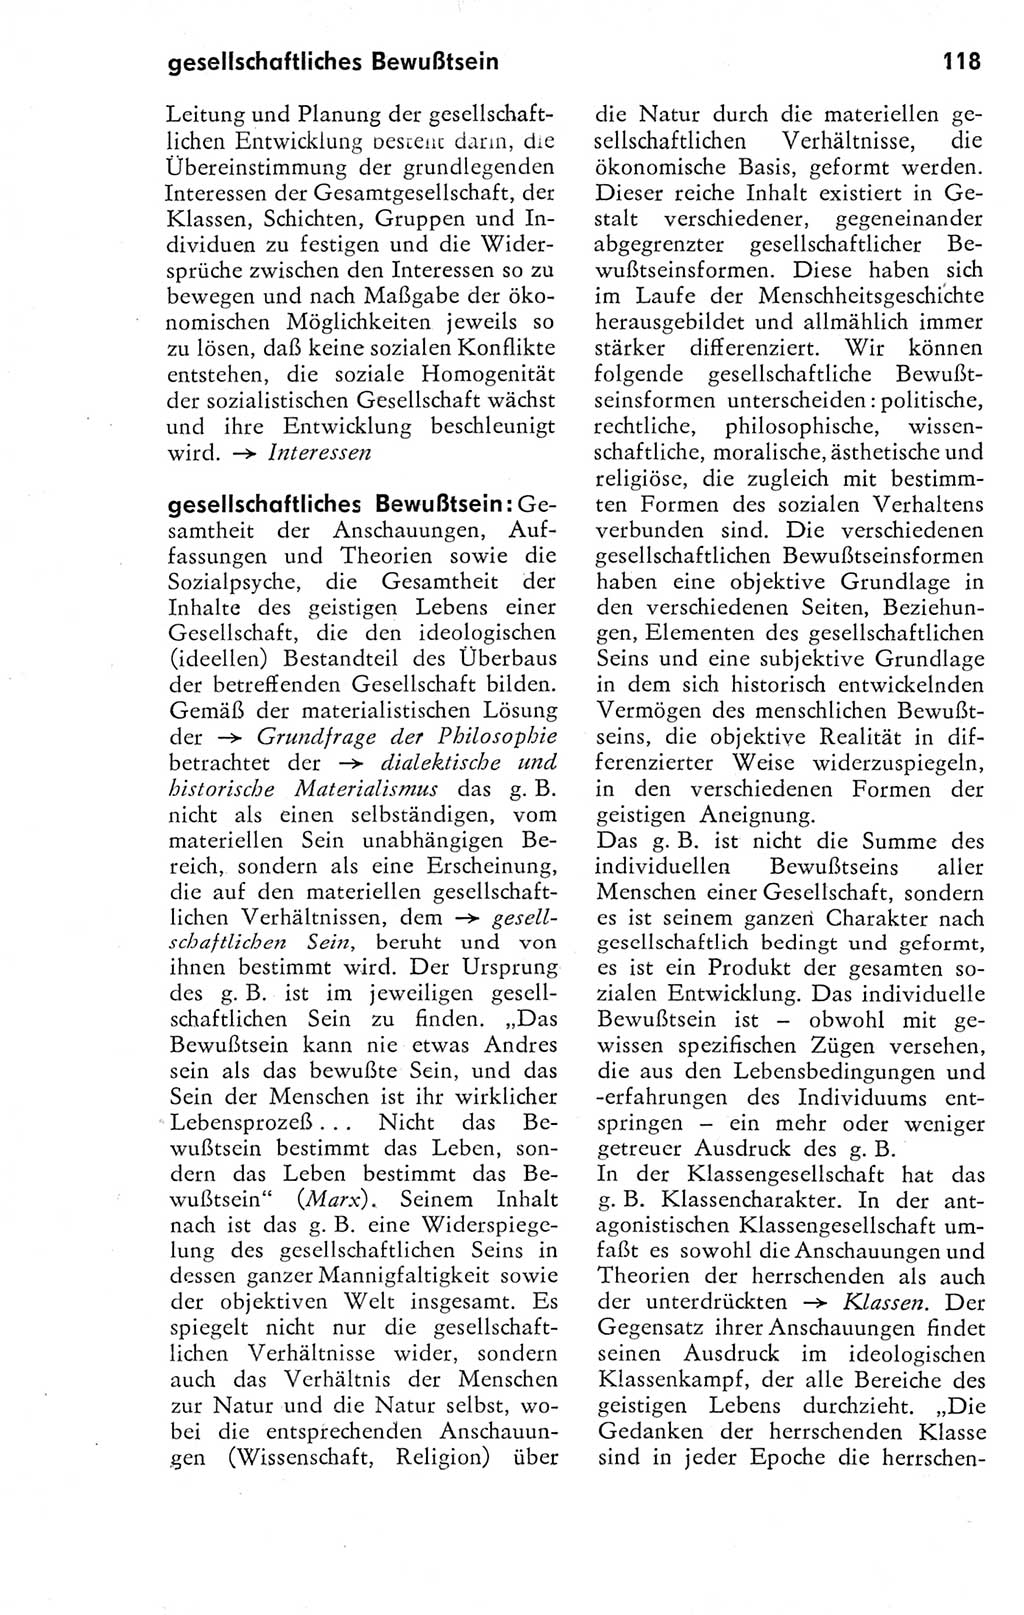 Kleines Wörterbuch der marxistisch-leninistischen Philosophie [Deutsche Demokratische Republik (DDR)] 1974, Seite 118 (Kl. Wb. ML Phil. DDR 1974, S. 118)